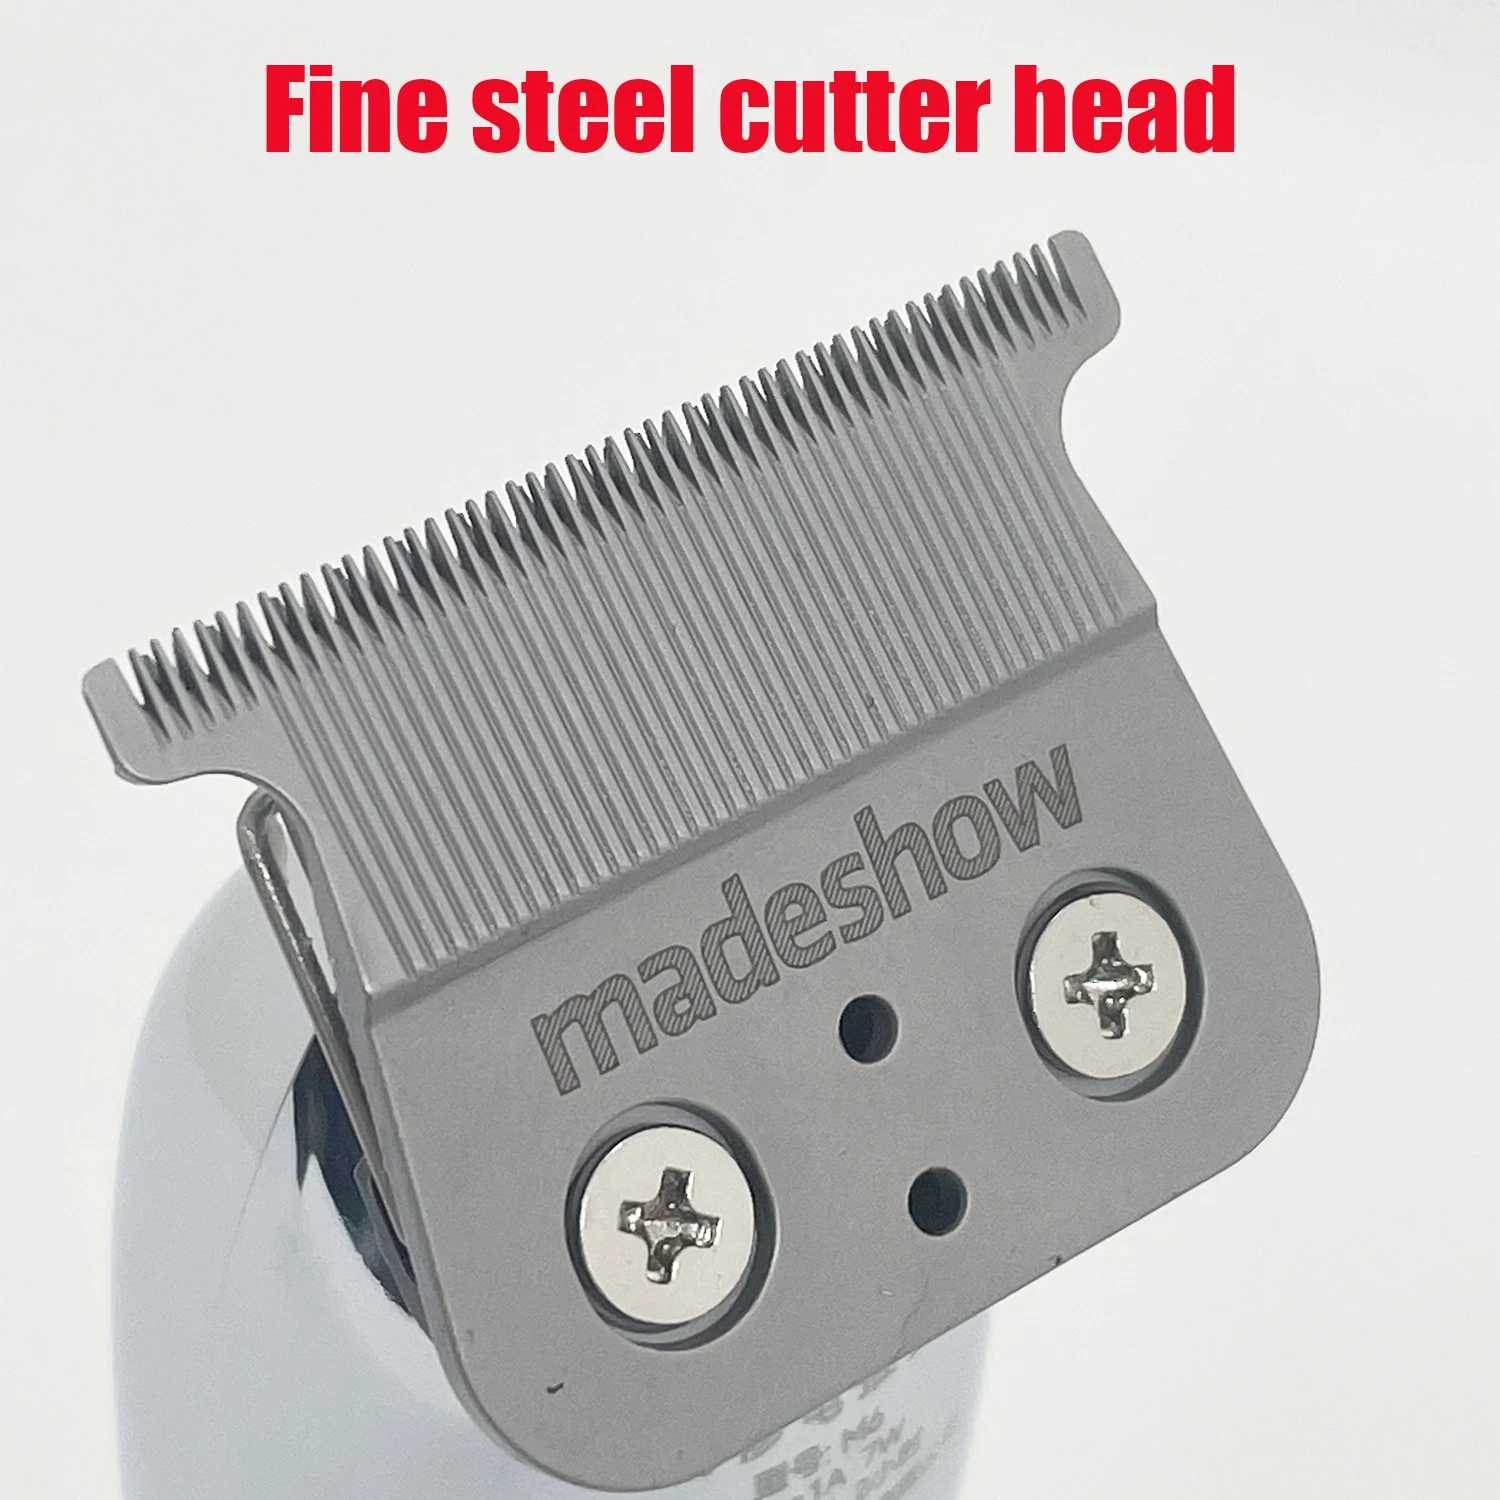 Madeshow M5 Hair Clipper Professional Hair Clipper Men Cordless Hair Clipper Trimmer Top Quality Hair Cutting Tools enlarge